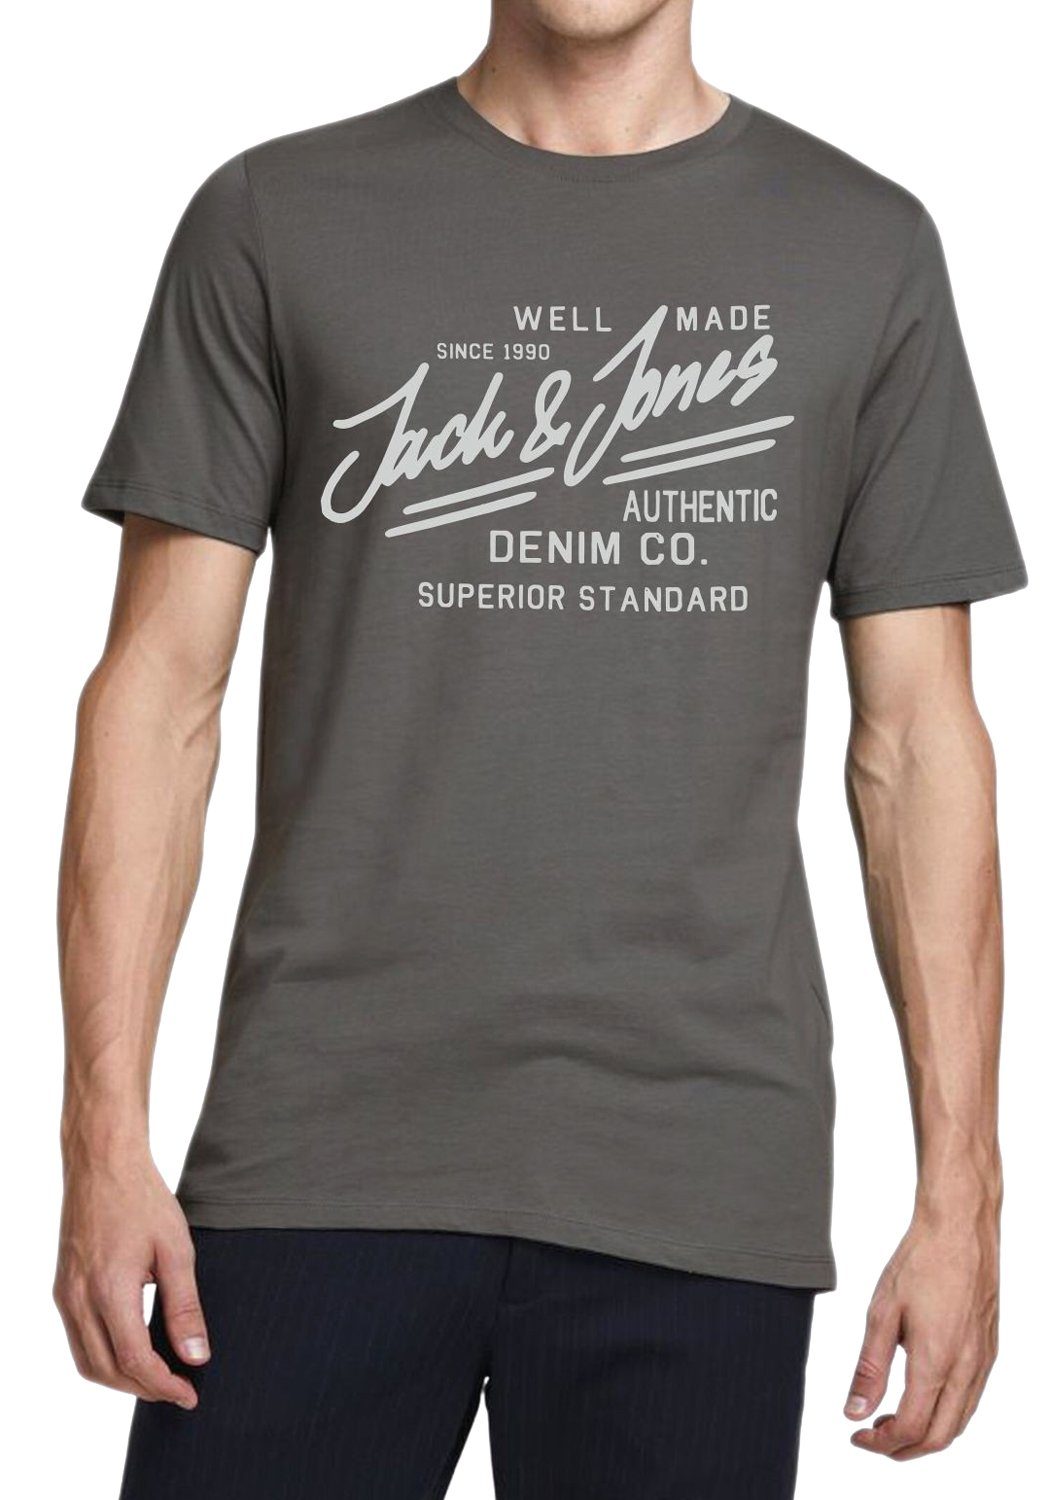 Regular mit Print-Shirt & Asphalt T-Shirt Fit Rundhalsausschnitt Jack Jones OPT3